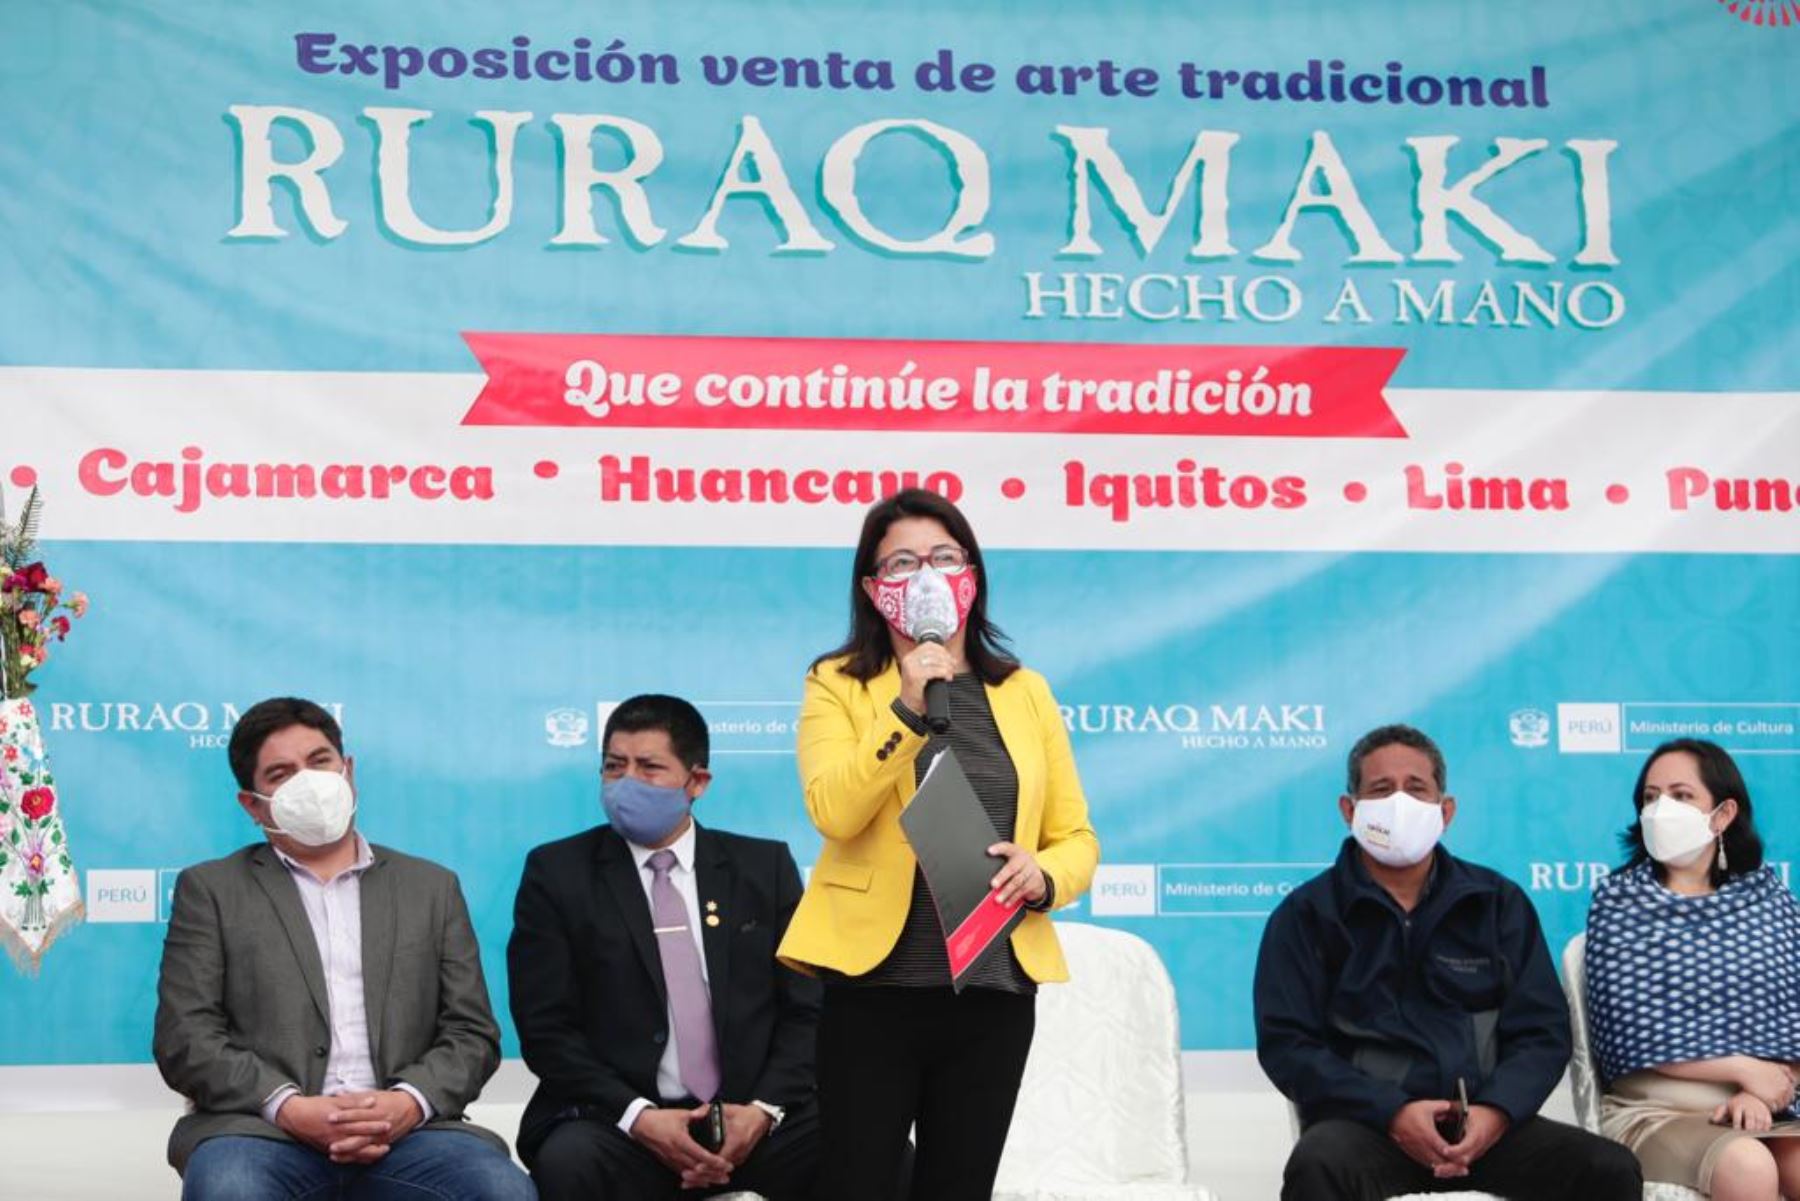 Ministra de Cultura, Gisela Ortiz, inauguró la primera edición de Ruraq maki presencial en Cajamarca, feria que reúne a colectivos de 12 provincias de la región.